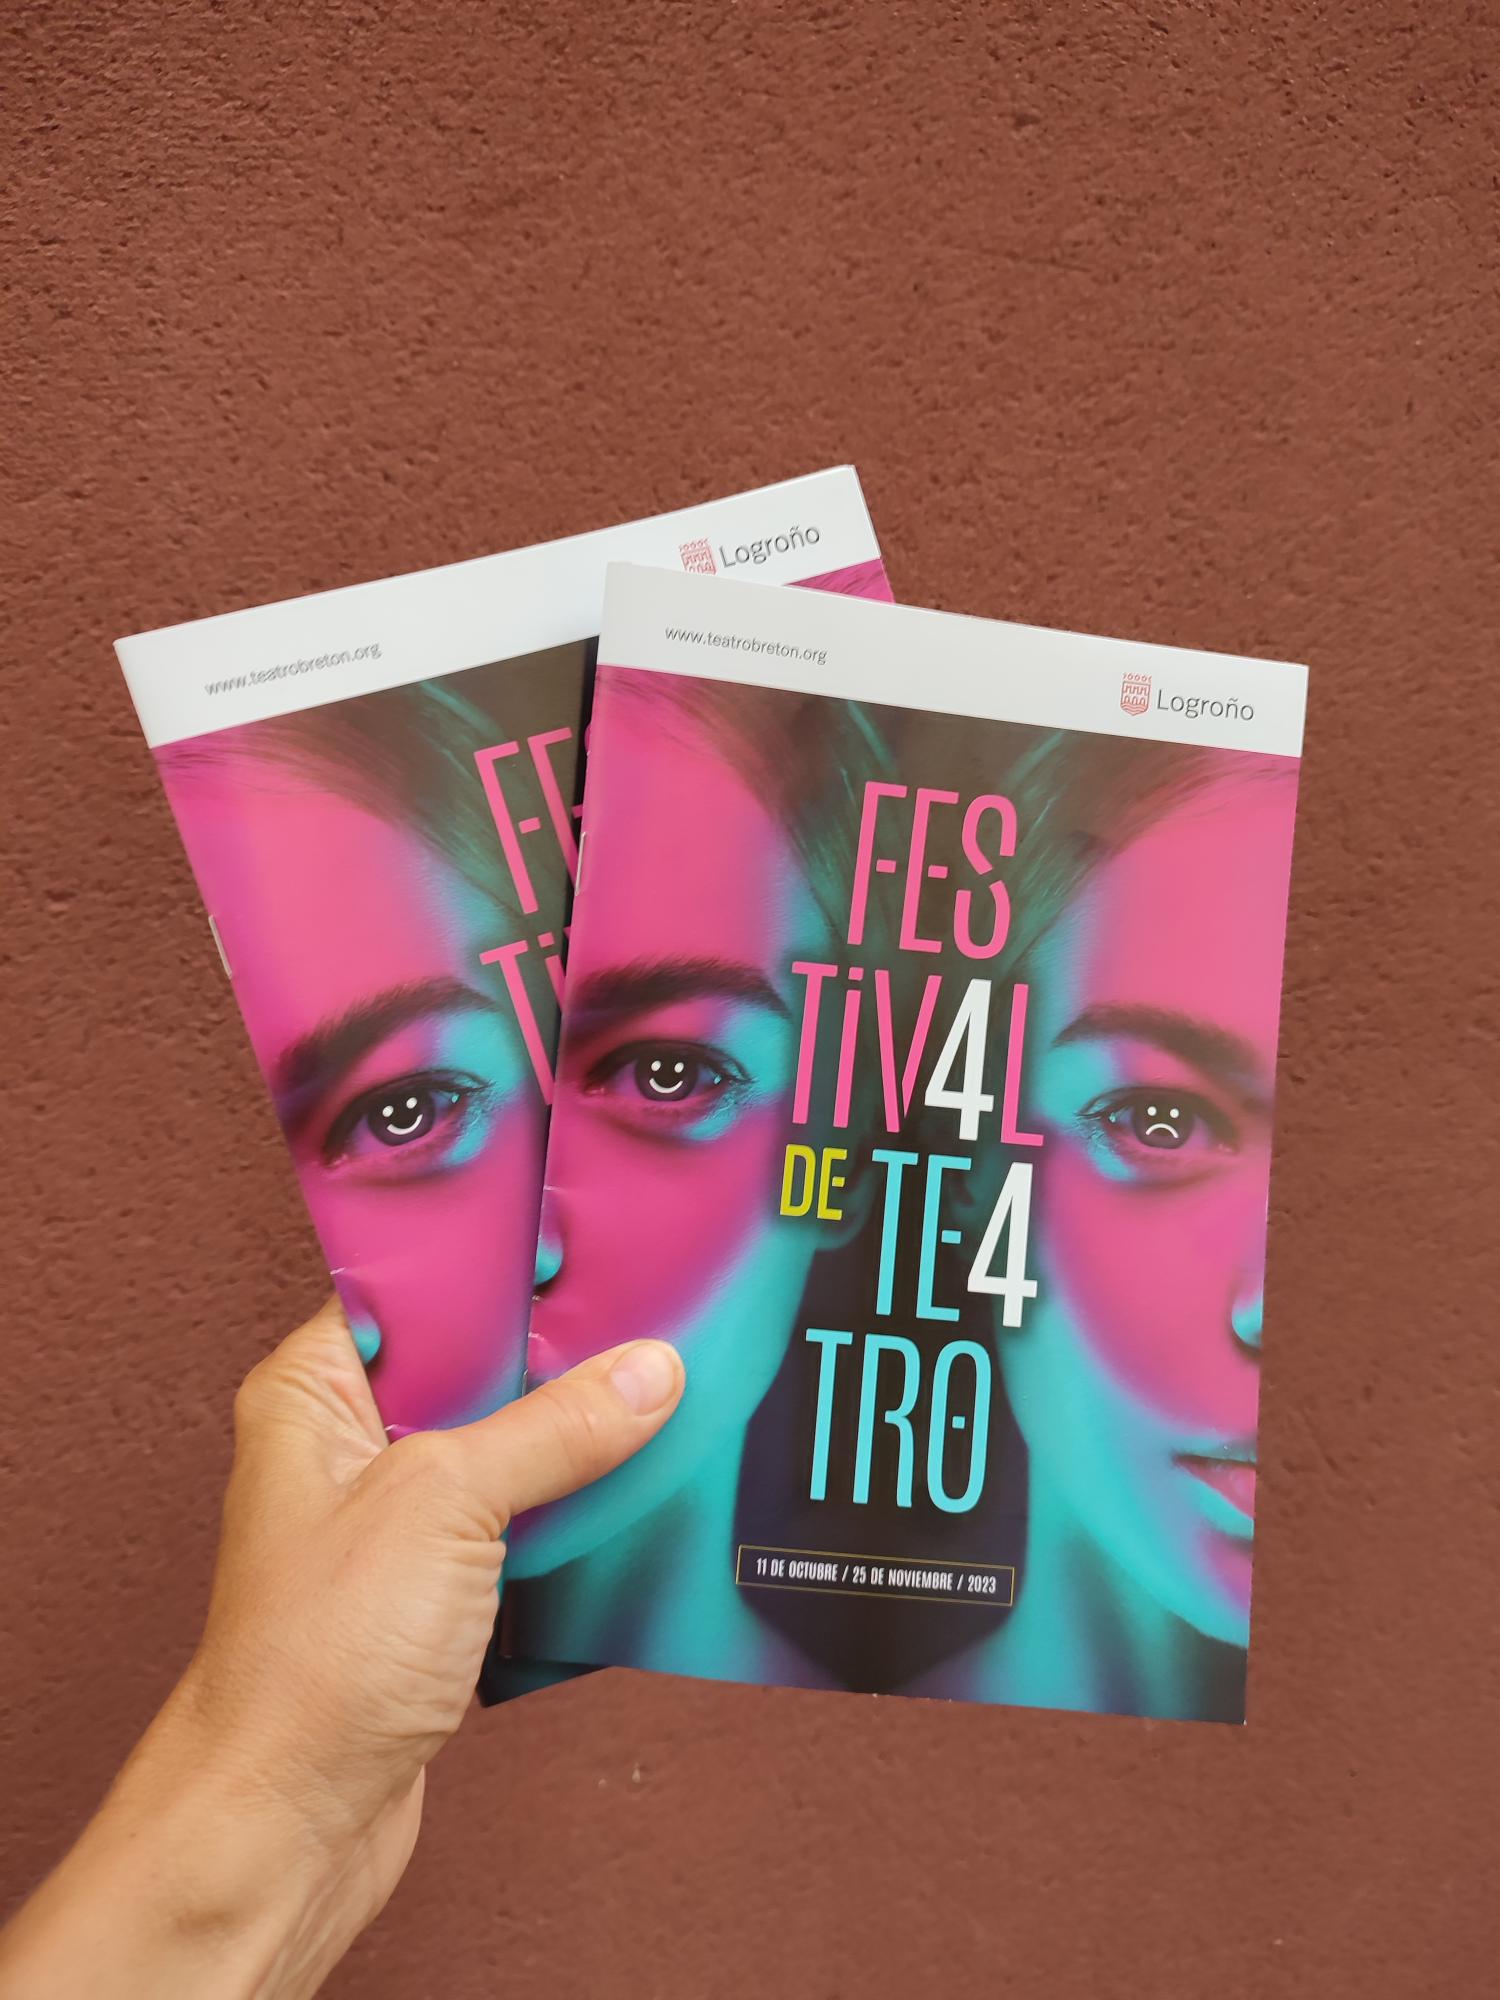 Folletos de la programación del 44 Festival de Teatro de Logroño